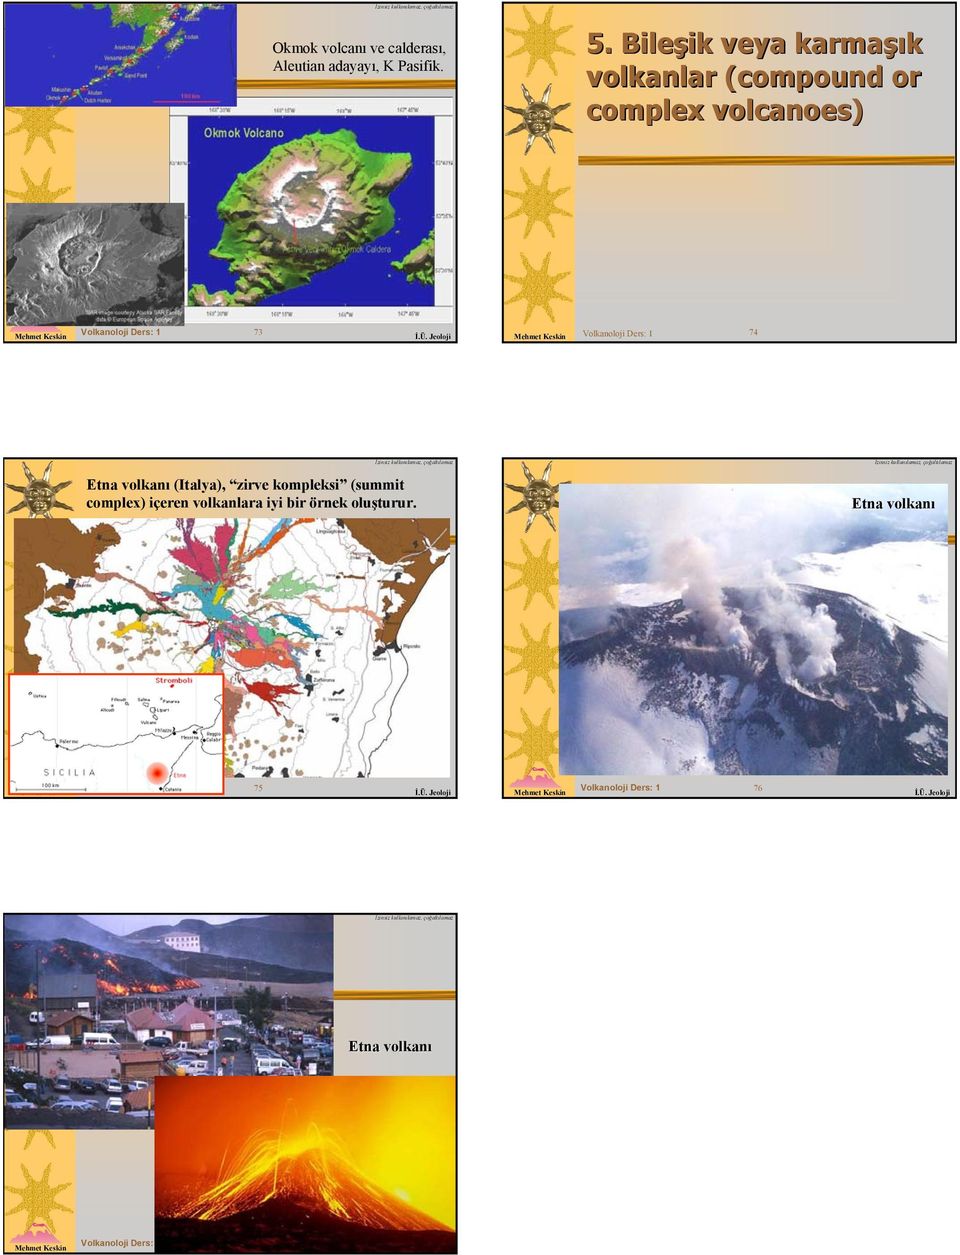 Volkanoloji Ders: 1 74 Etna volkanı (Italya), zirve kompleksi (summit complex) içeren